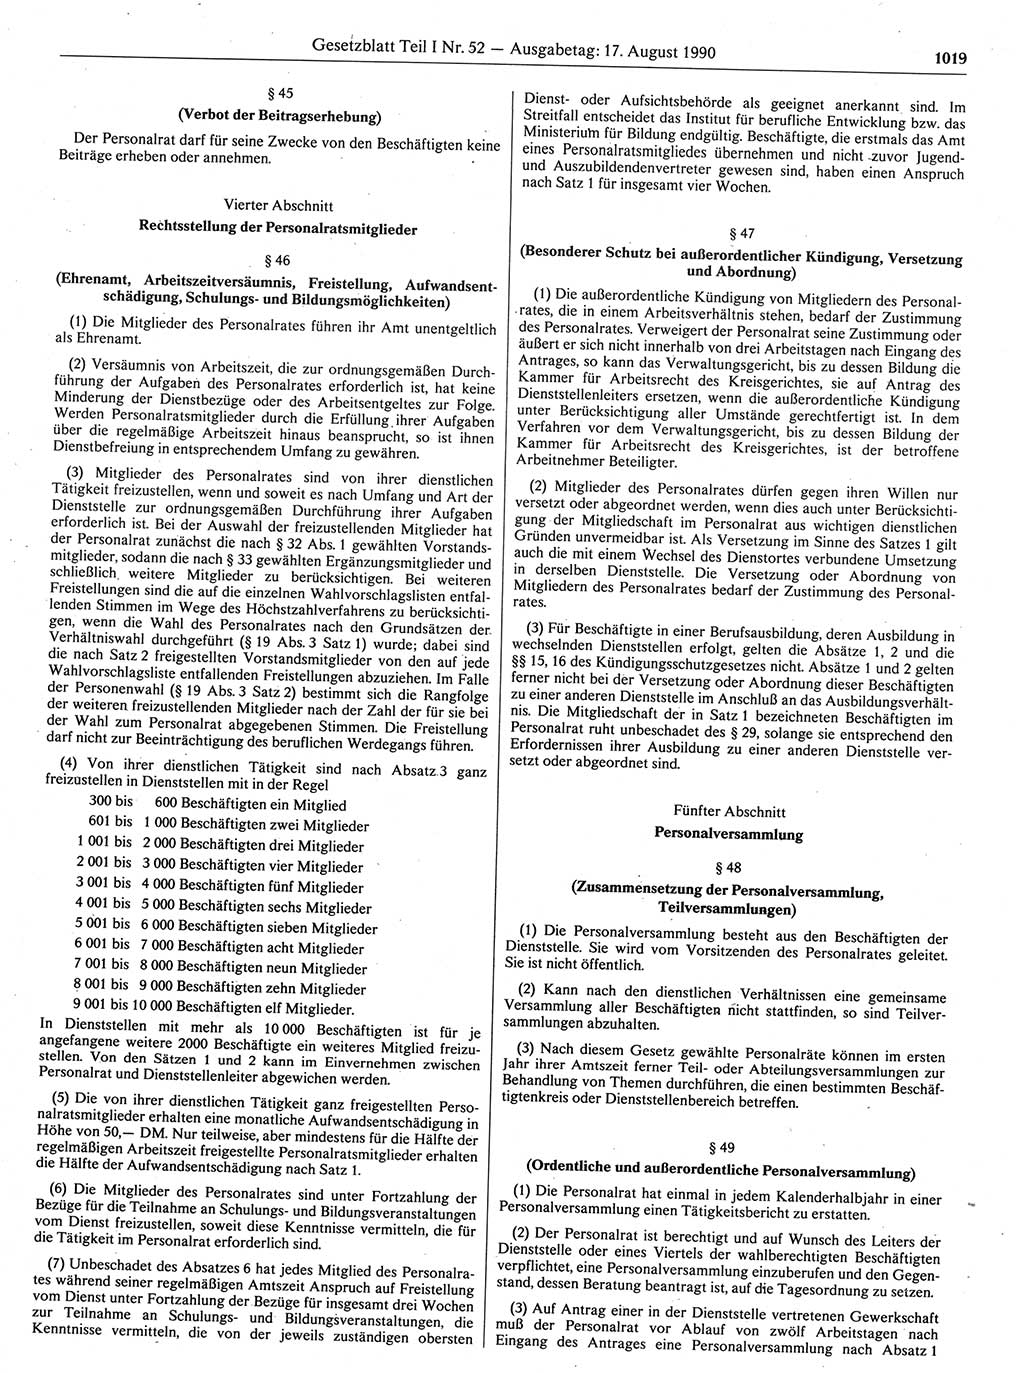 Gesetzblatt (GBl.) der Deutschen Demokratischen Republik (DDR) Teil Ⅰ 1990, Seite 1019 (GBl. DDR Ⅰ 1990, S. 1019)